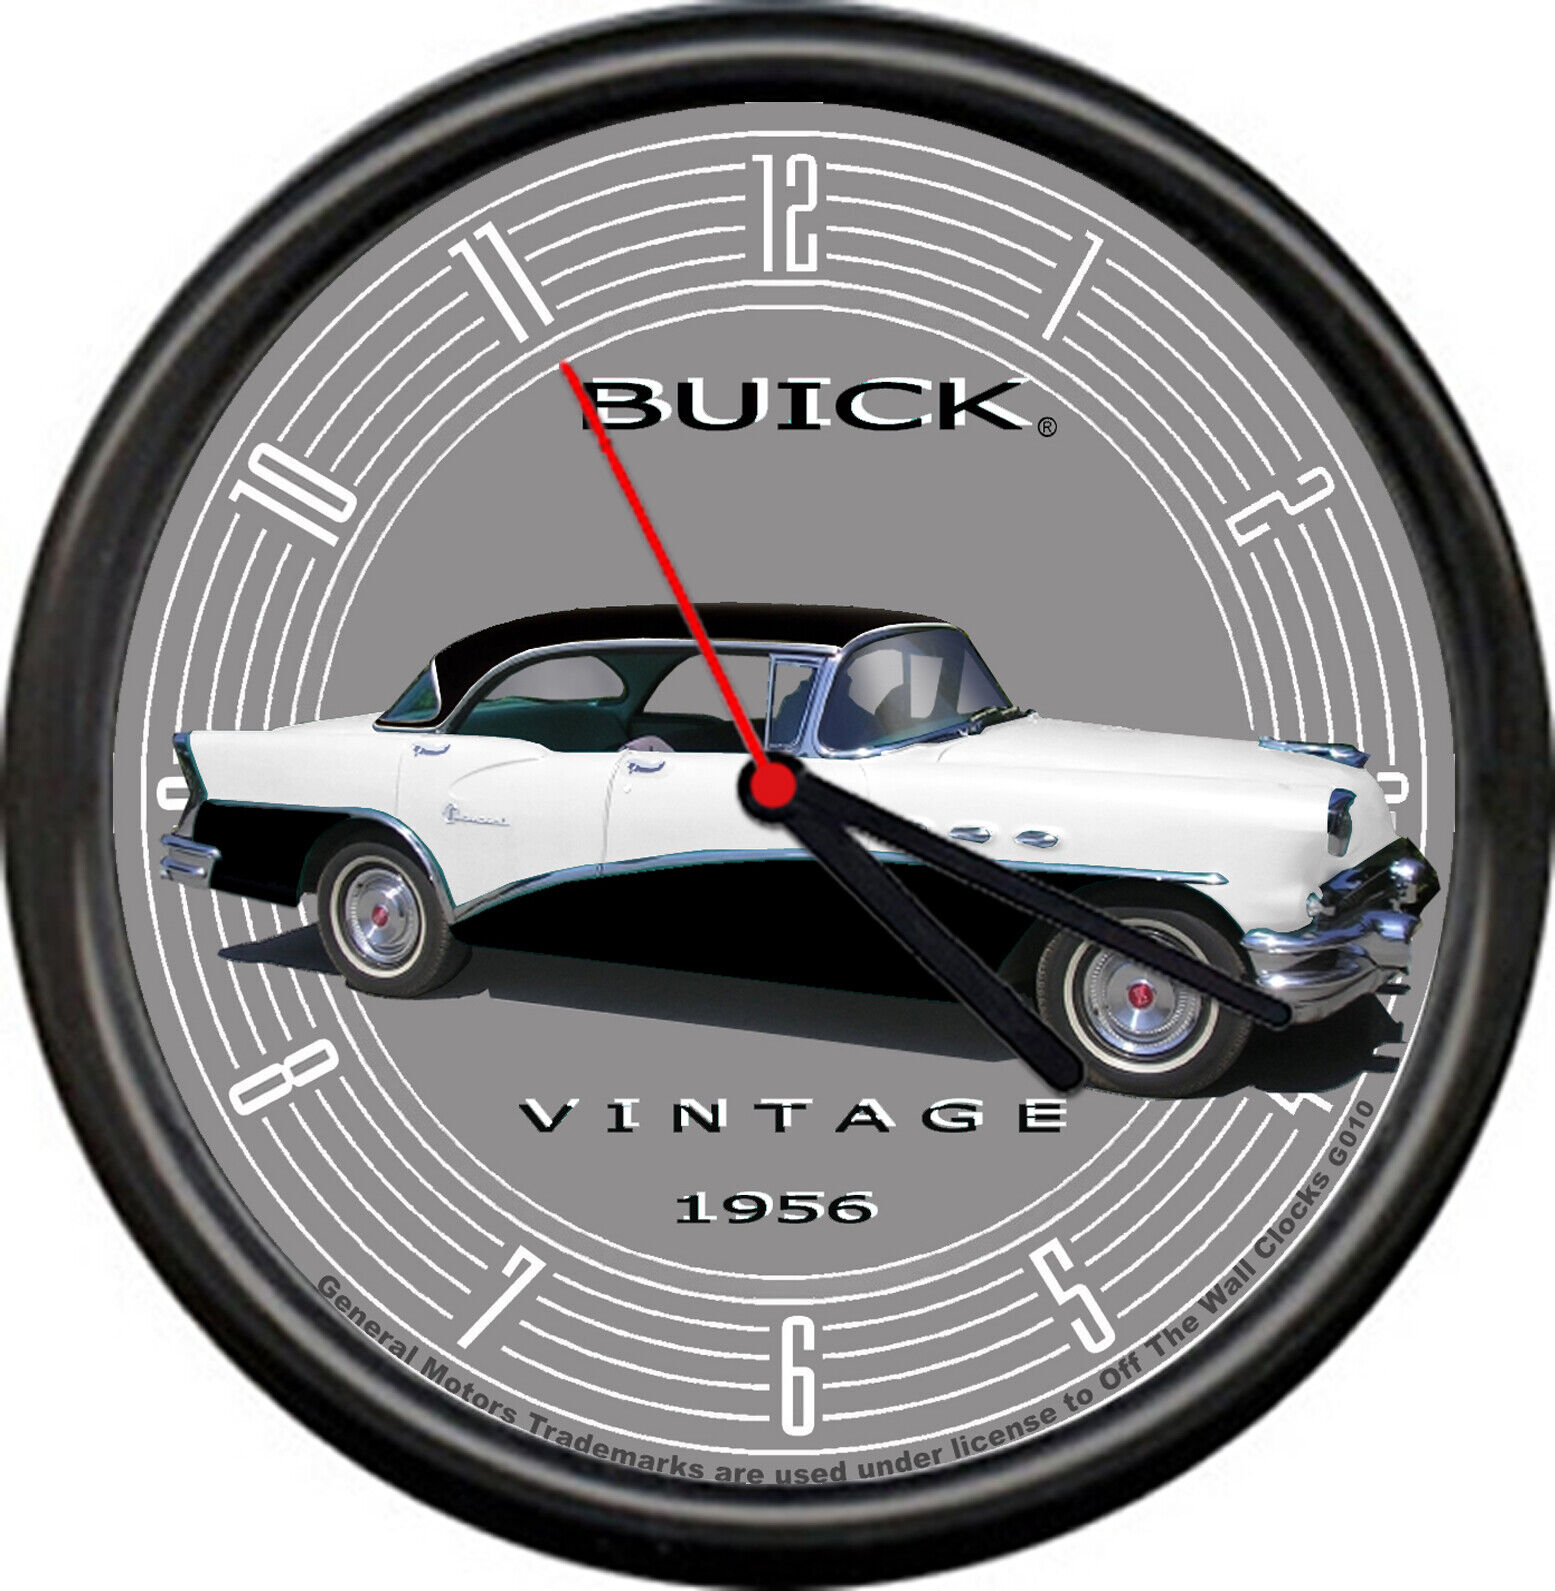 Licensed 1956 Buick 4 Door Sedan Vintage B&W General Motors Sign Wall Clock